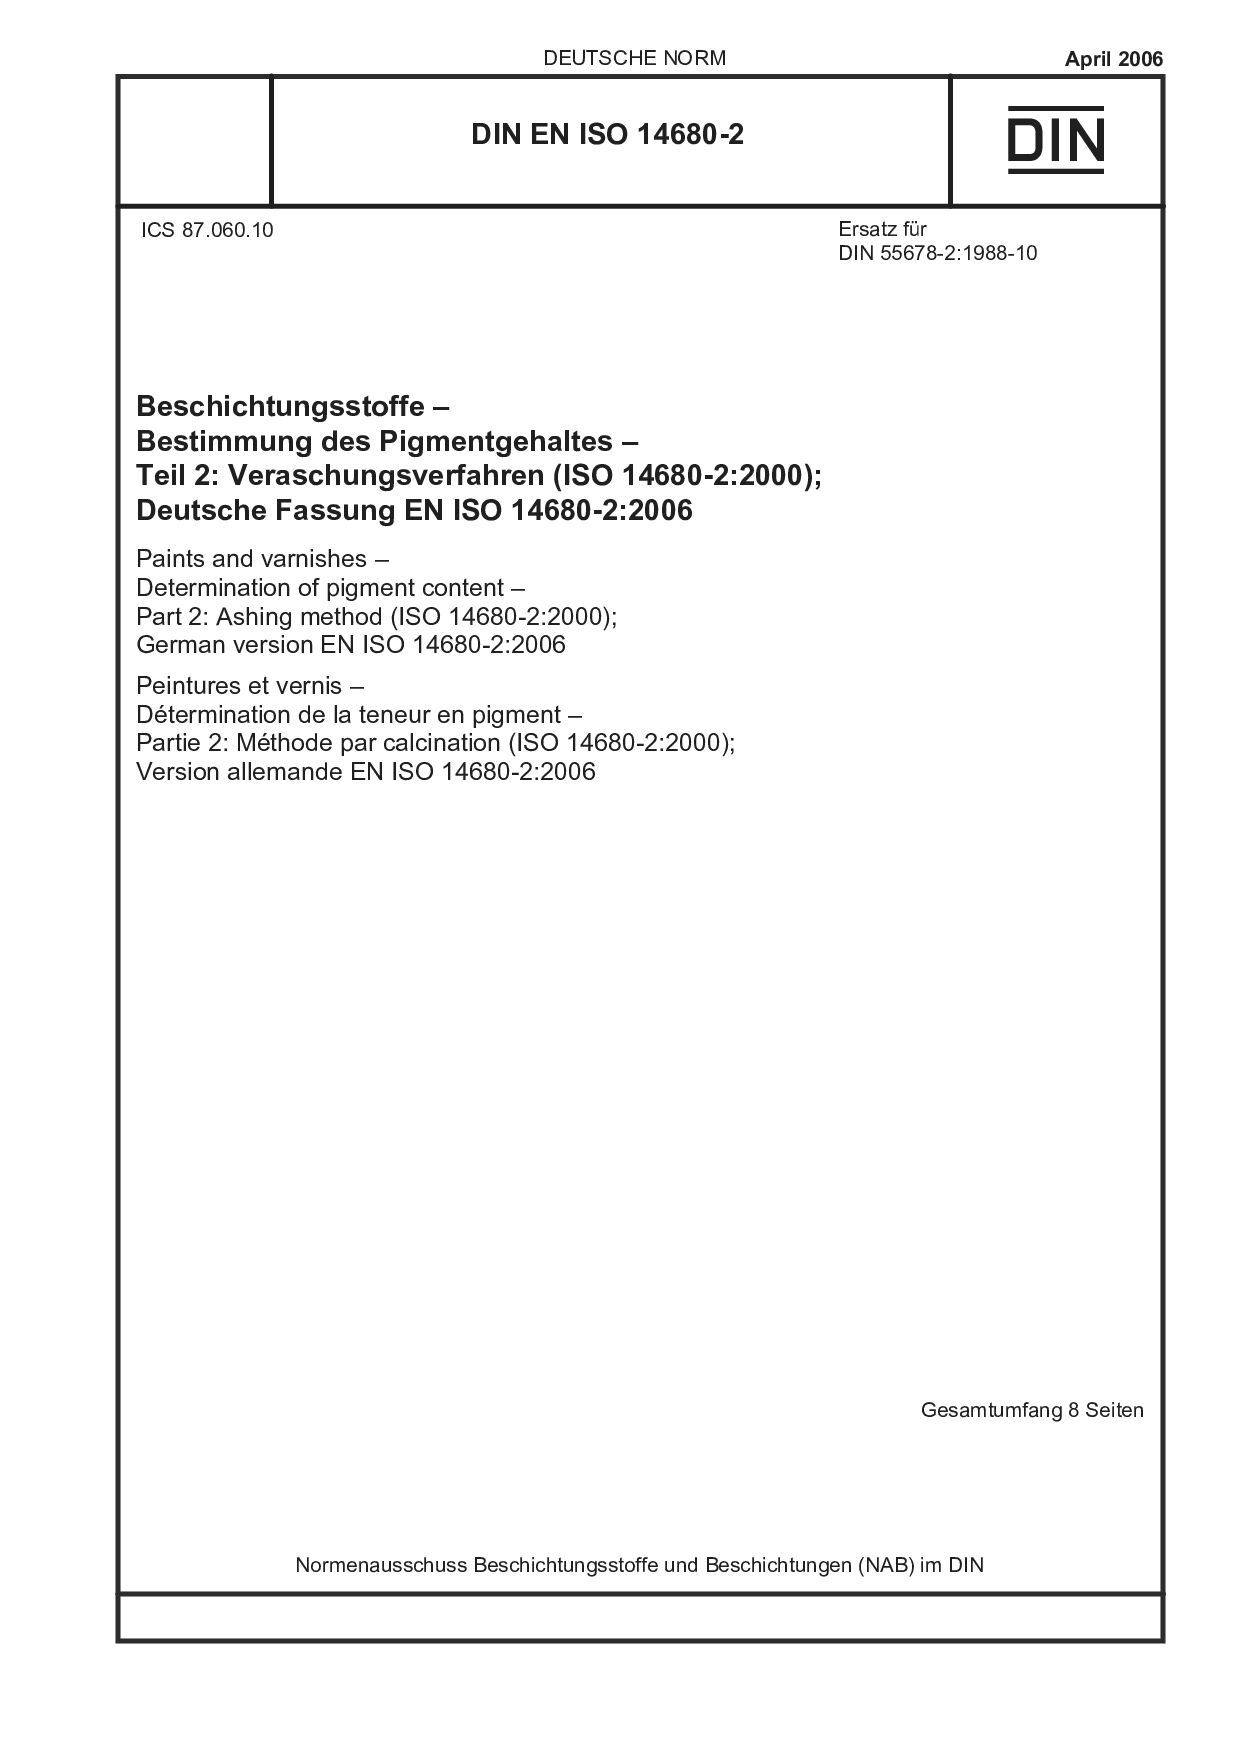 DIN EN ISO 14680-2:2006